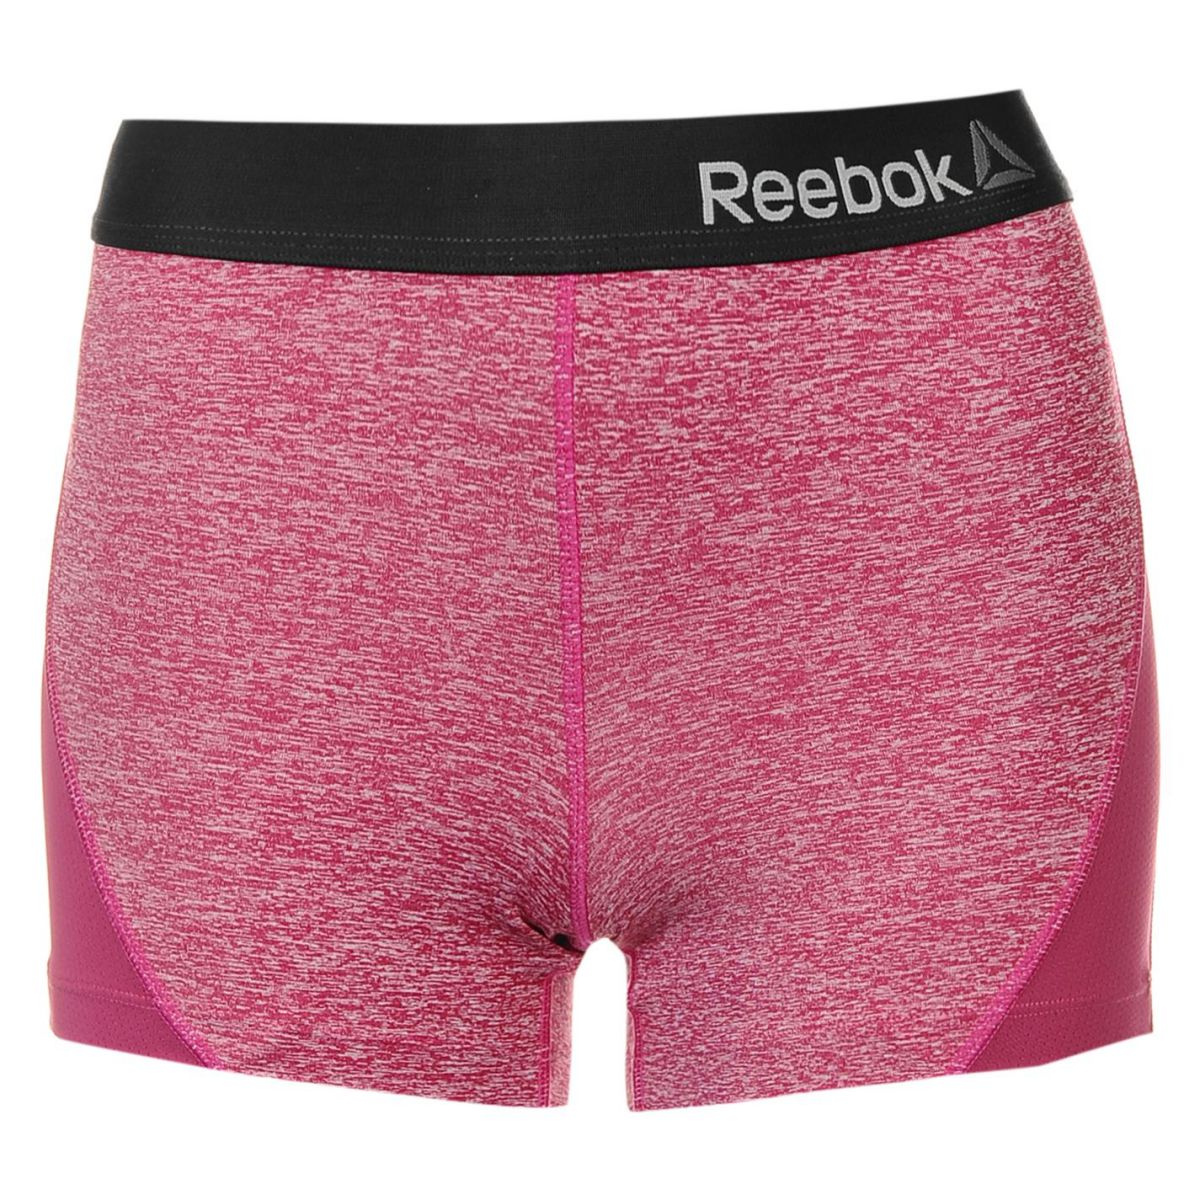 Reebok Womens Missy Sports Short Briefs Underwear Mesh Stretch Moisture ...